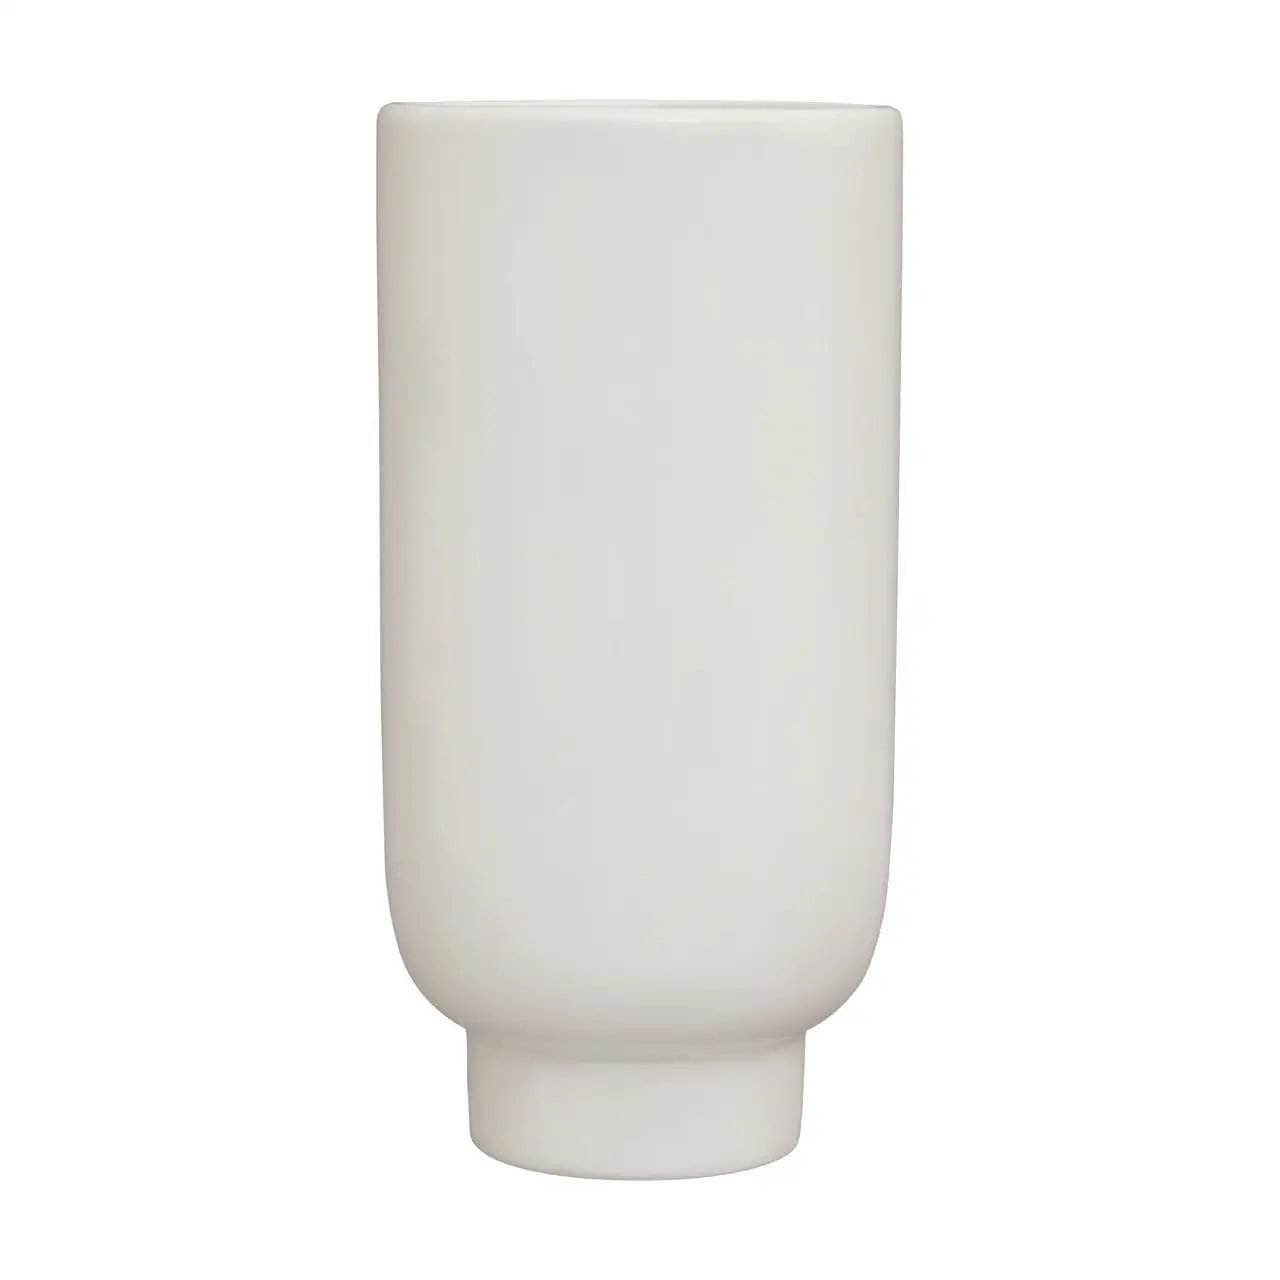 Homeware  -  Viso Large Face Vase  -  60003175